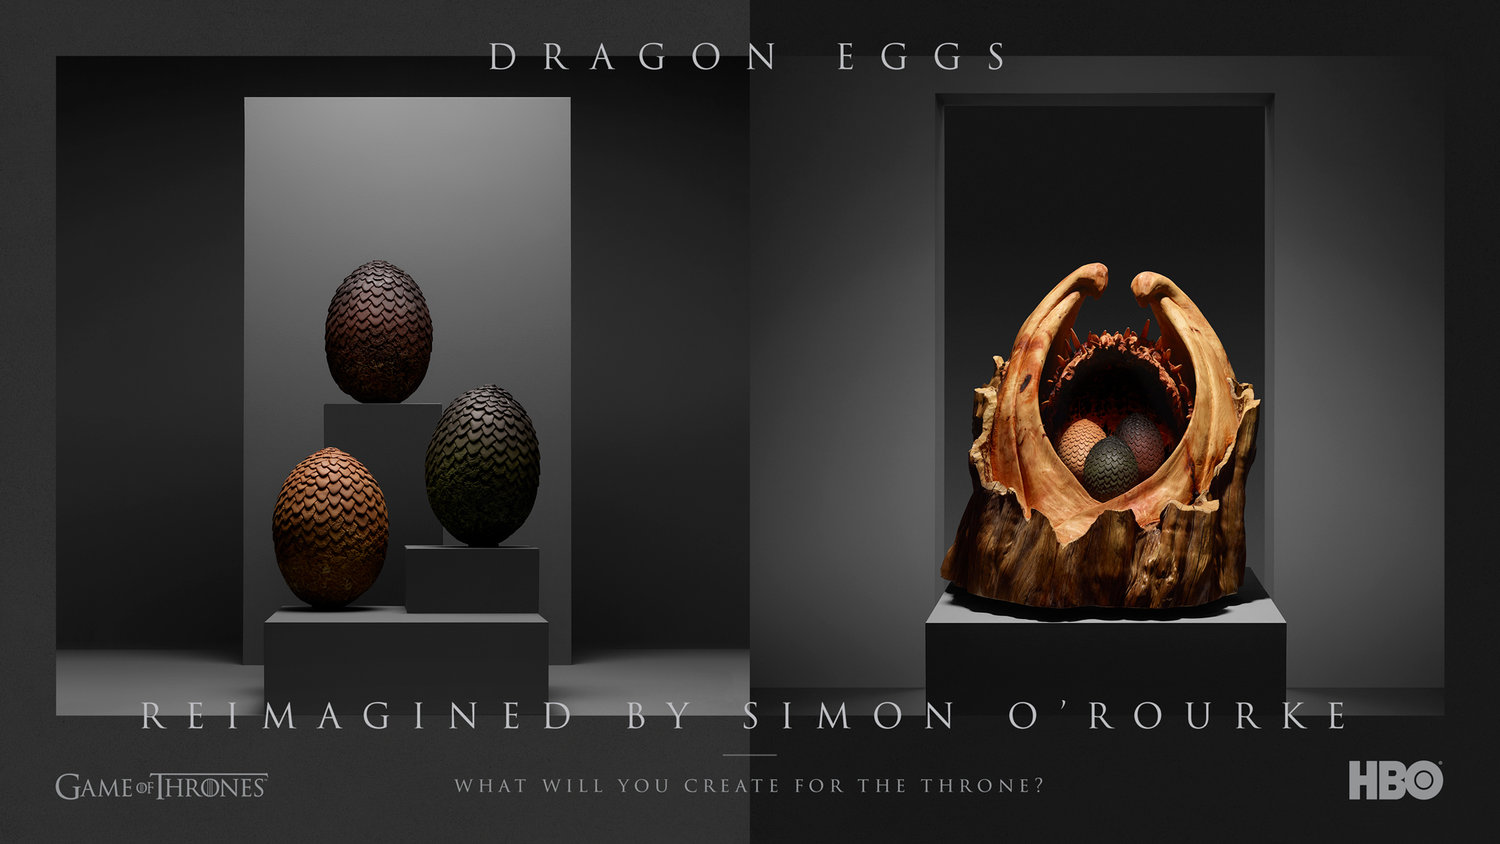 09_FIRE_Dragon_Eggs_Simon_O_Rourke